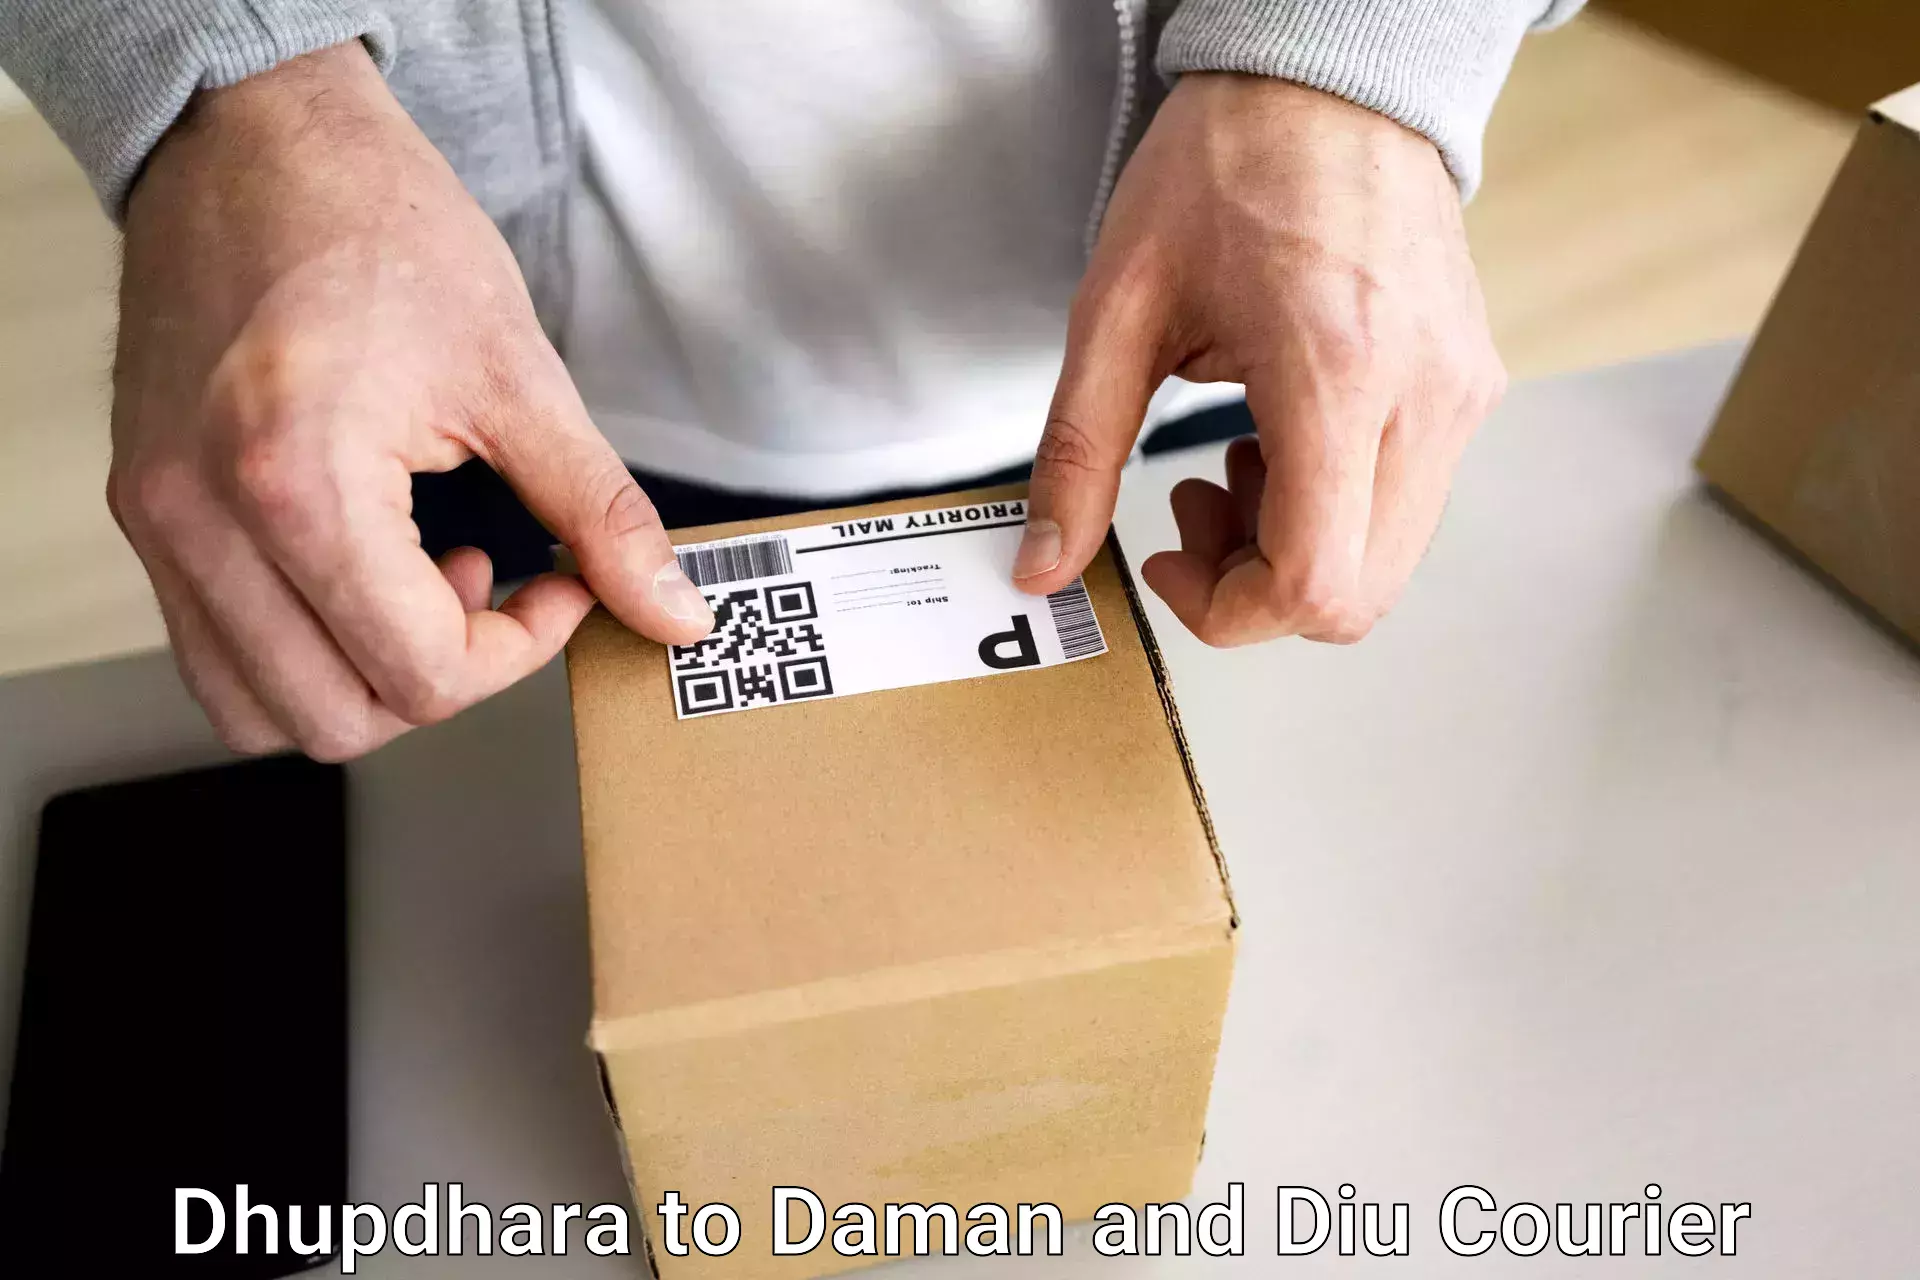 Baggage shipping quotes Dhupdhara to Daman and Diu